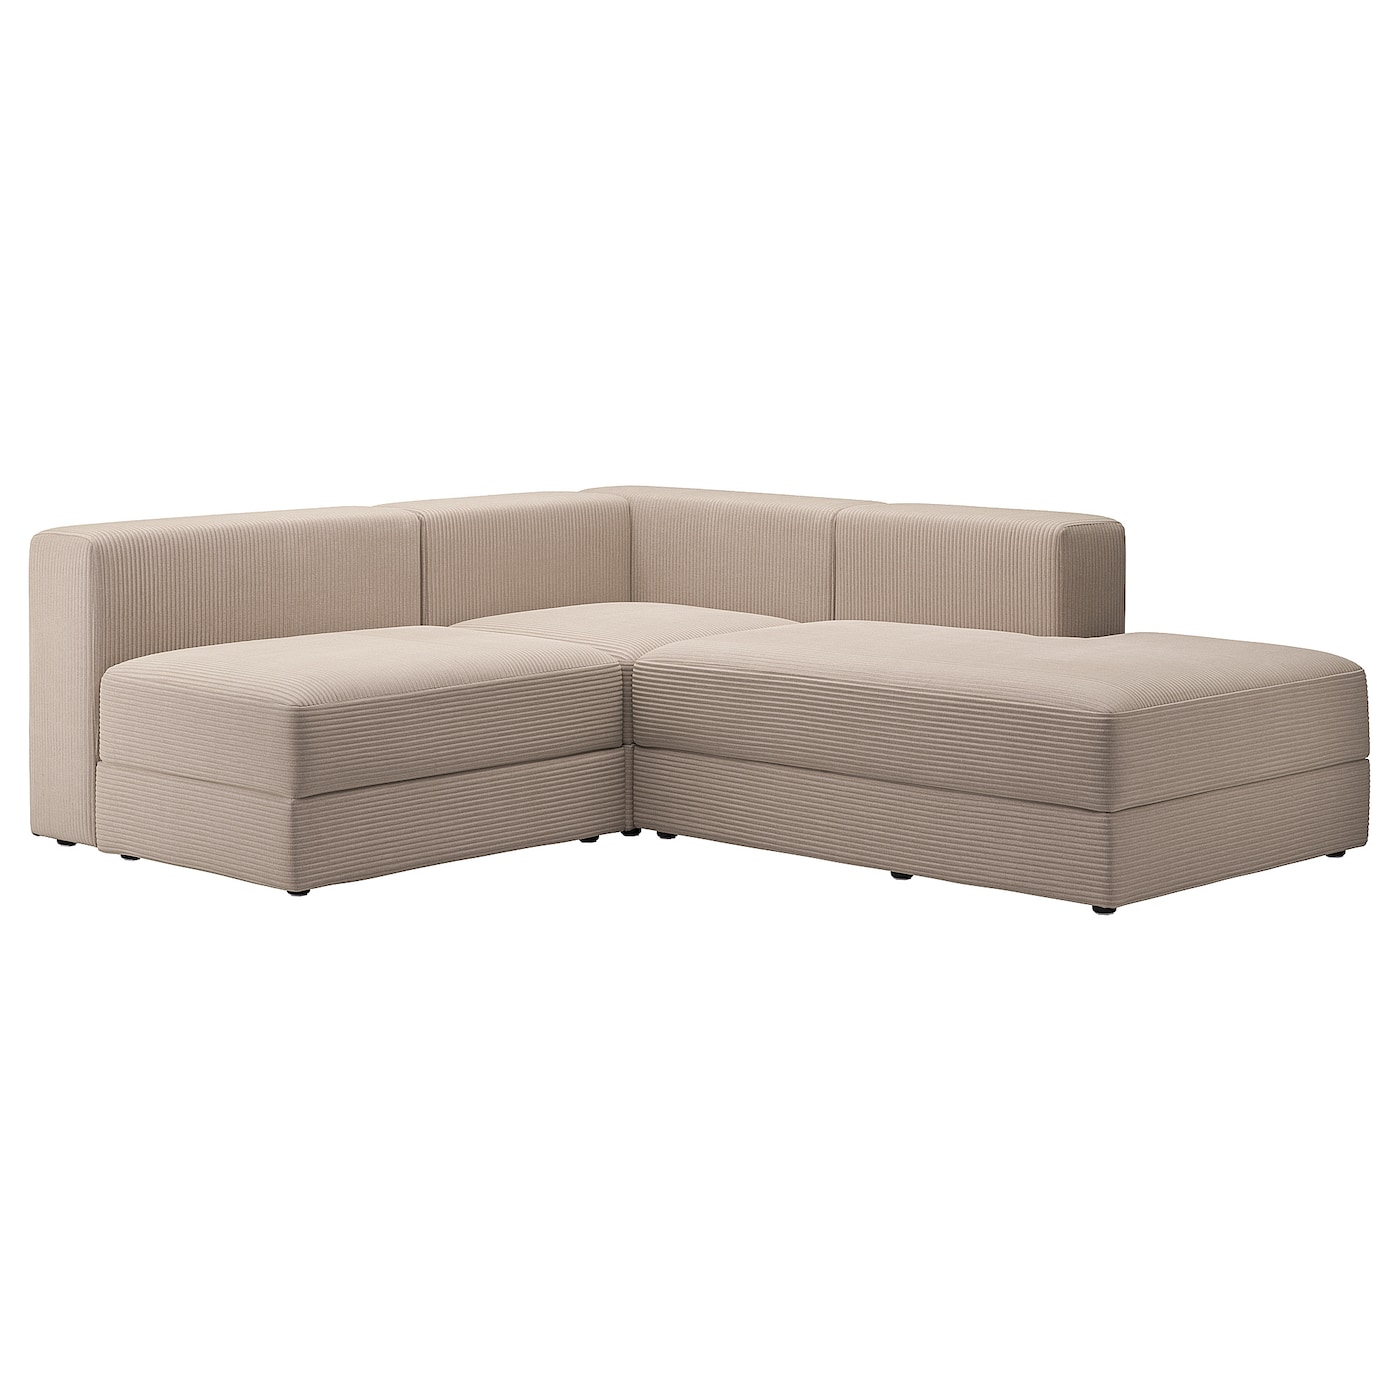 ДЖЭТТЕБО 2,5-местный модульный угловой диван-диван, правый/Самсала серый бежевый JÄTTEBO IKEA угловой модульный диван наполи 3 green правый